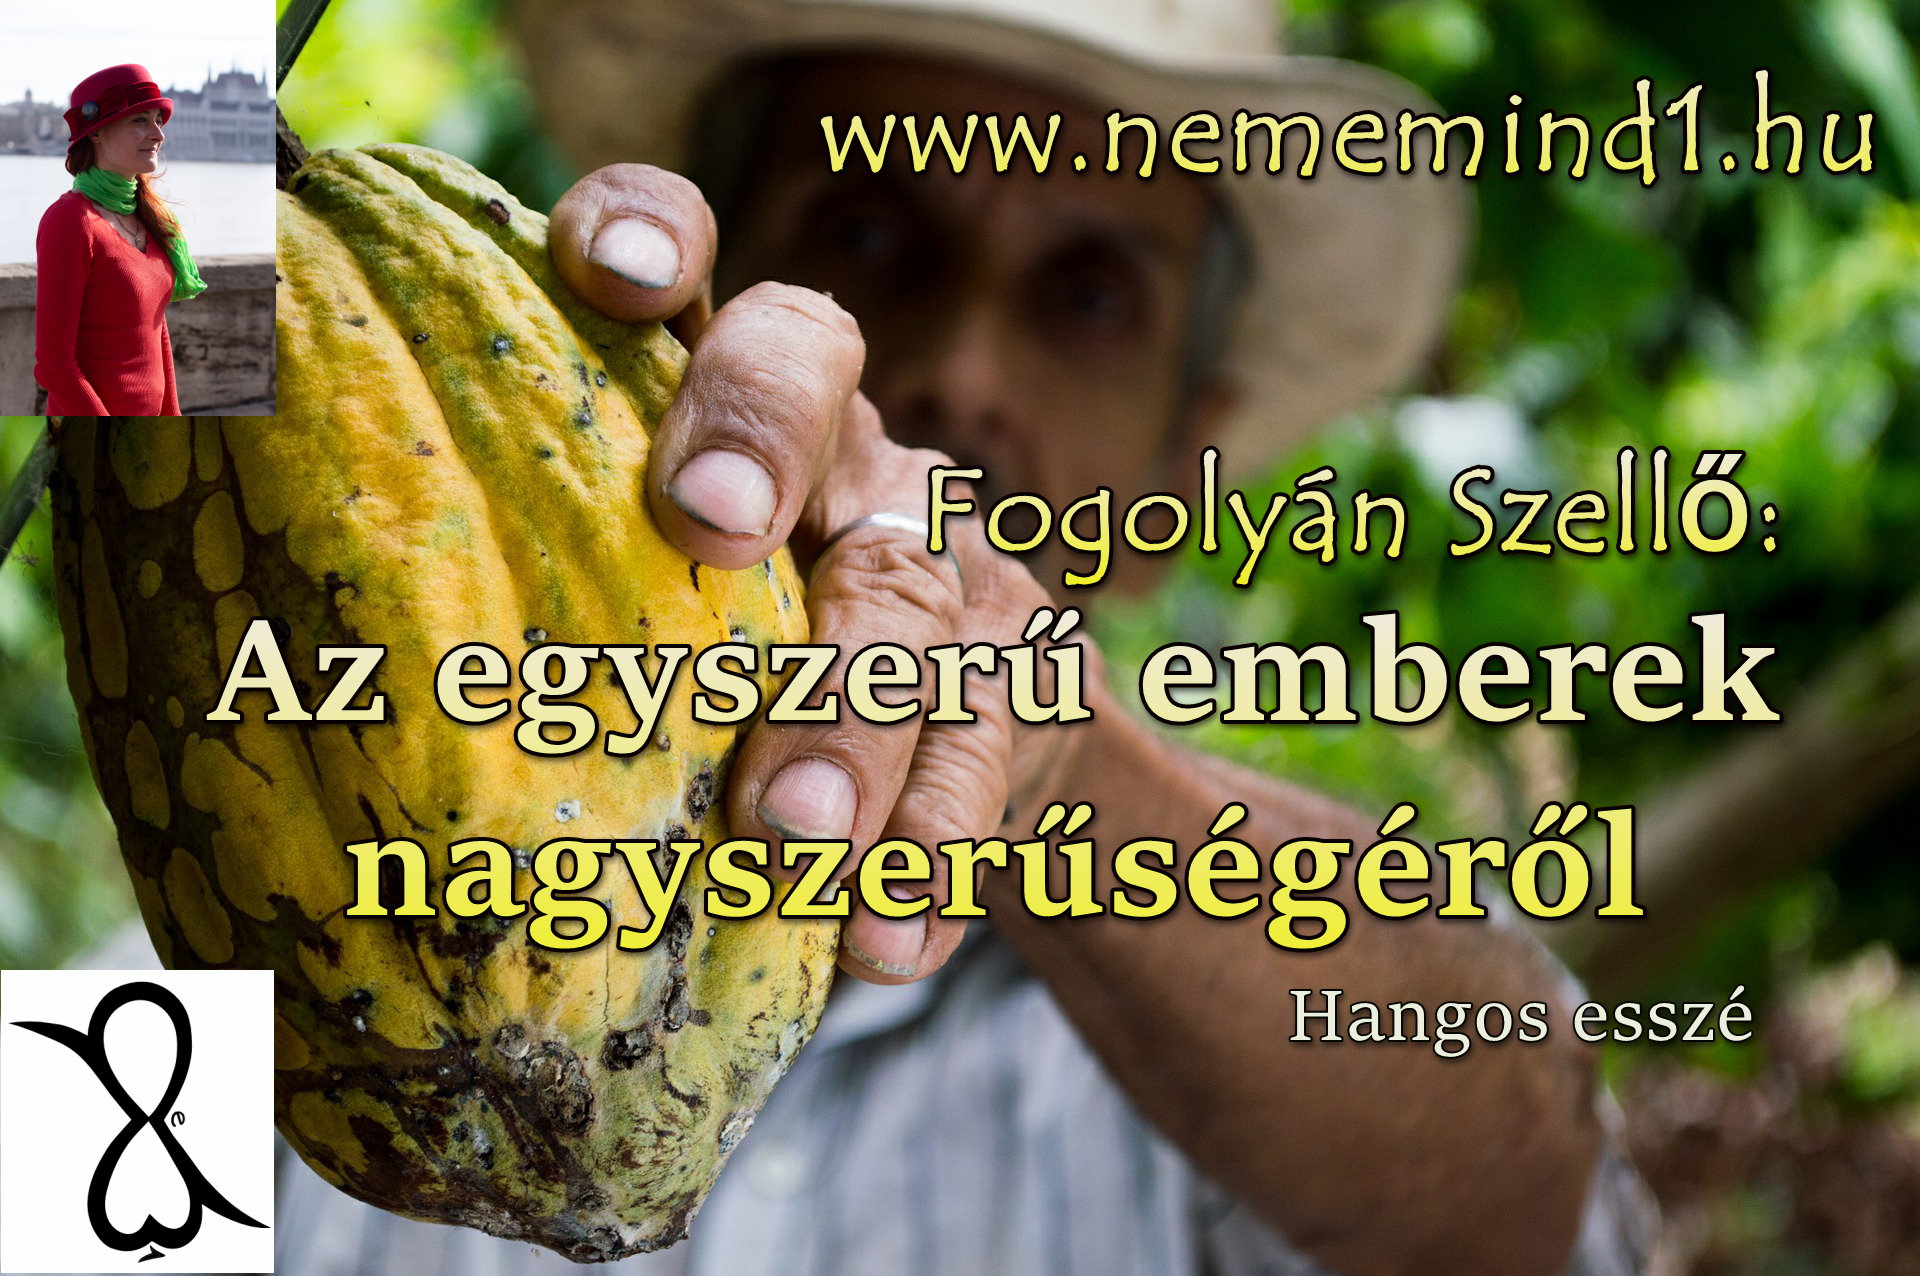 You are currently viewing Hangos Fogolyán Szellő (Harangi Emese) írások 54, Az egyszerű emberek nagyszerűségéről